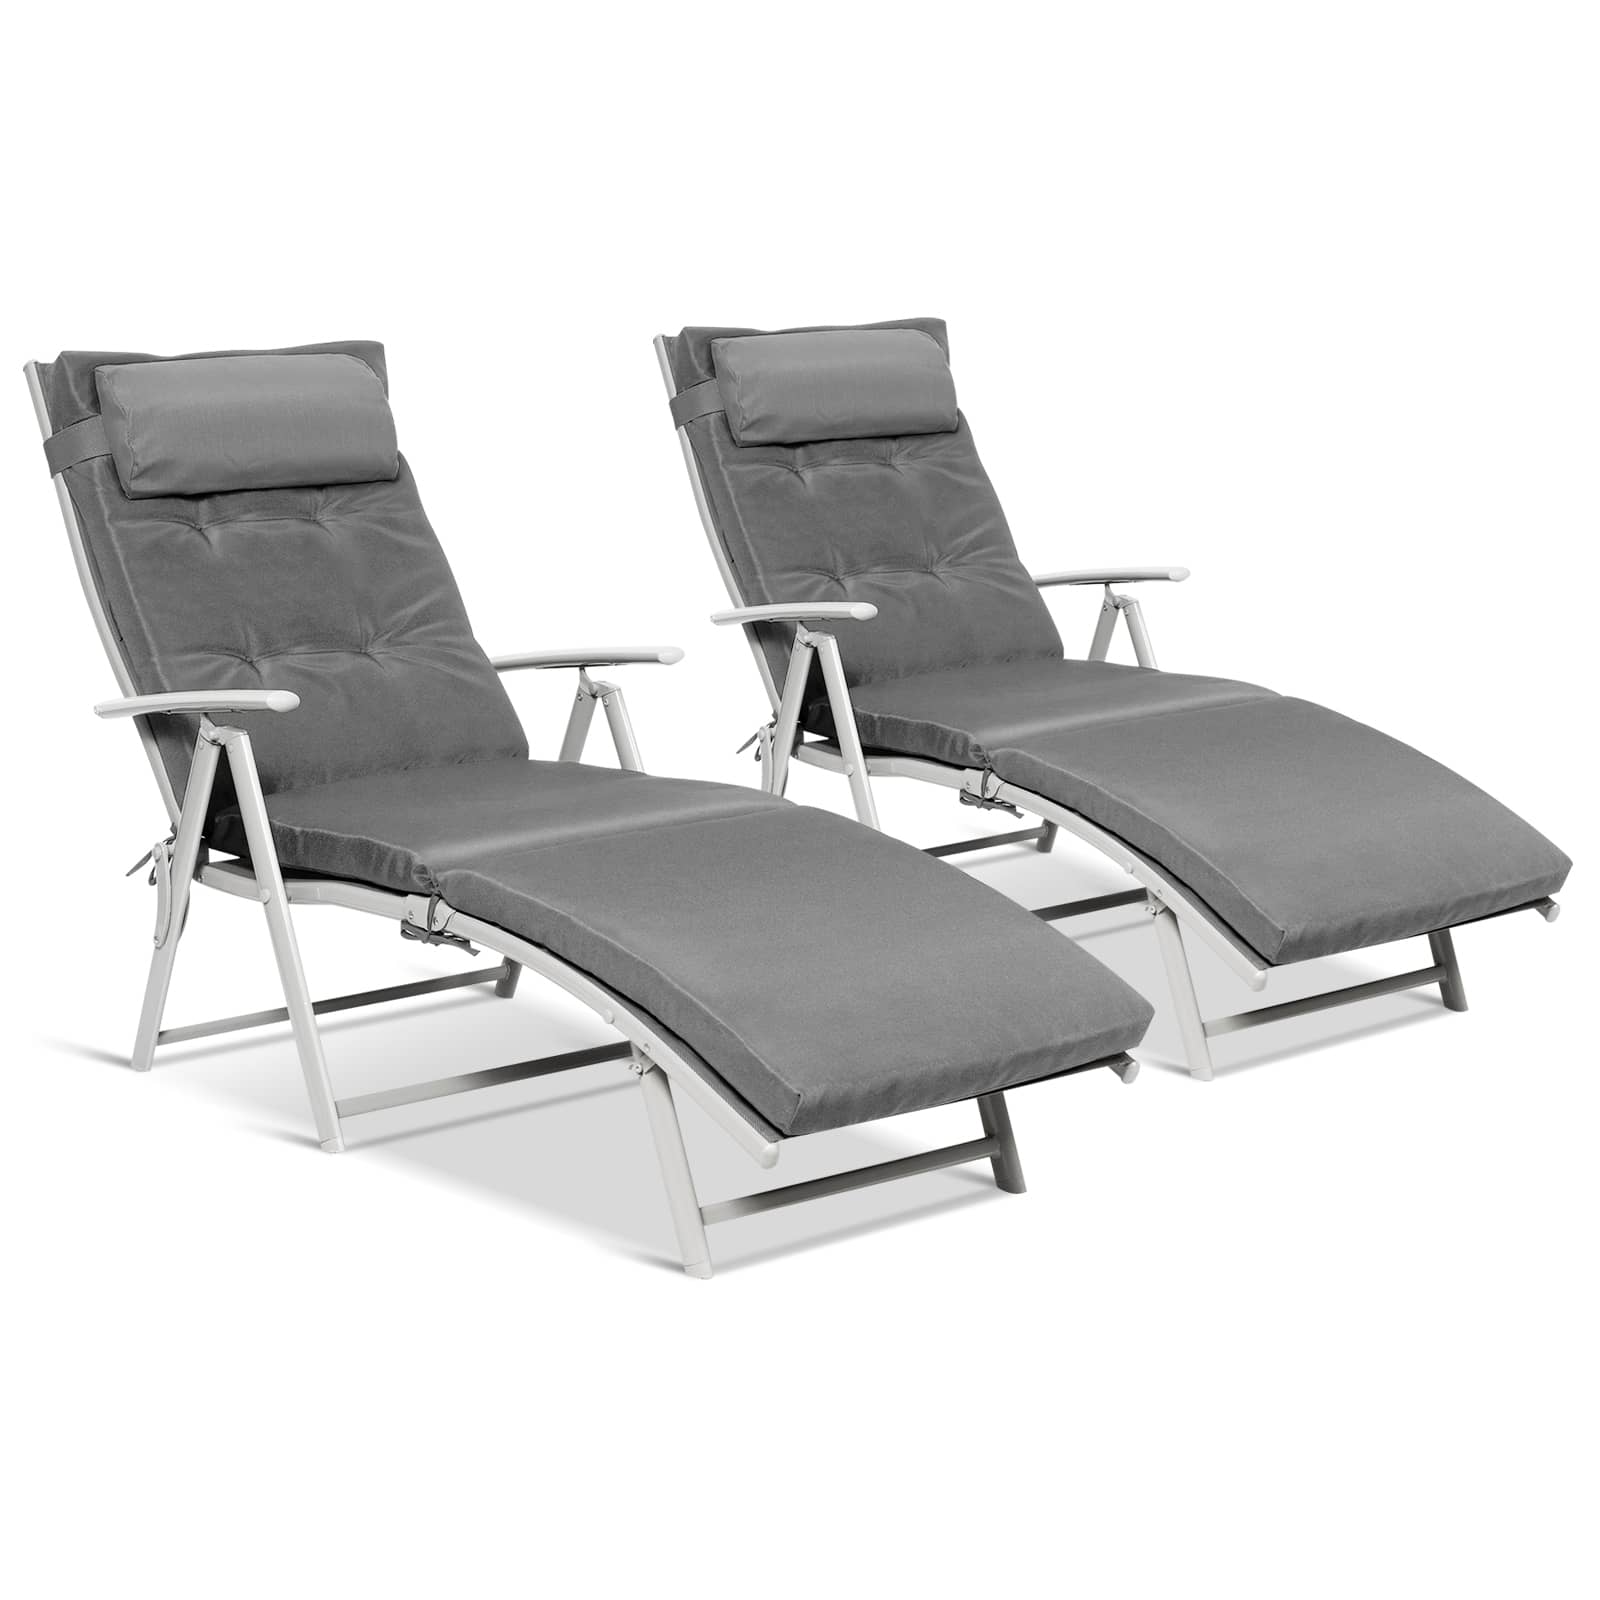 CASAINC Outdoor Lightweight Folding Chaise Lounge Chair-Casainc Canada